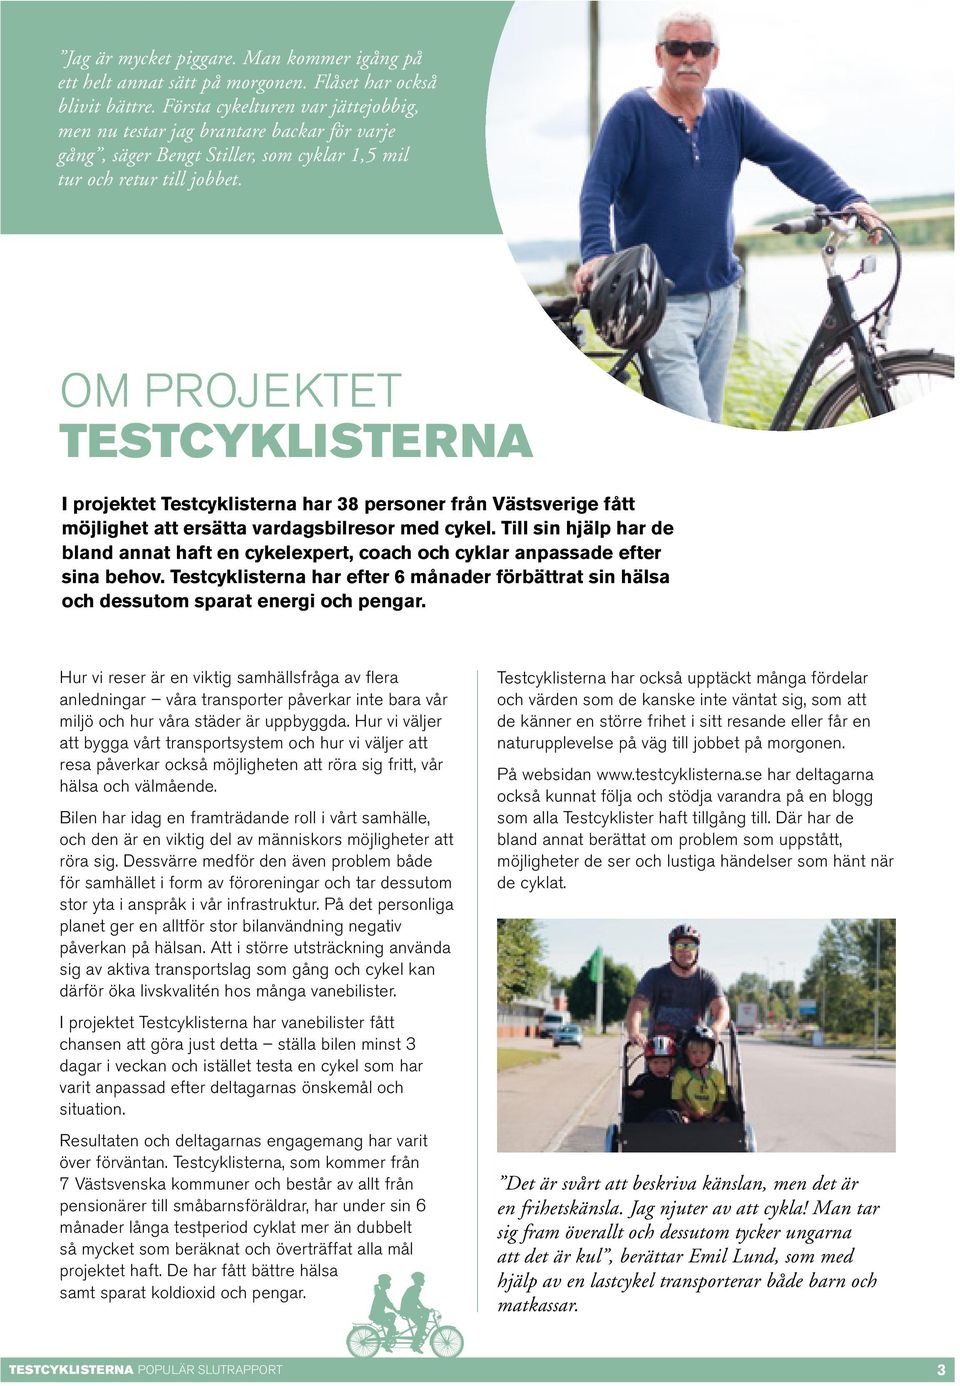 Om projektet testcyklisterna I projektet Testcyklisterna har 38 personer från Västsverige fått möjlighet att ersätta vardagsbilresor med cykel.